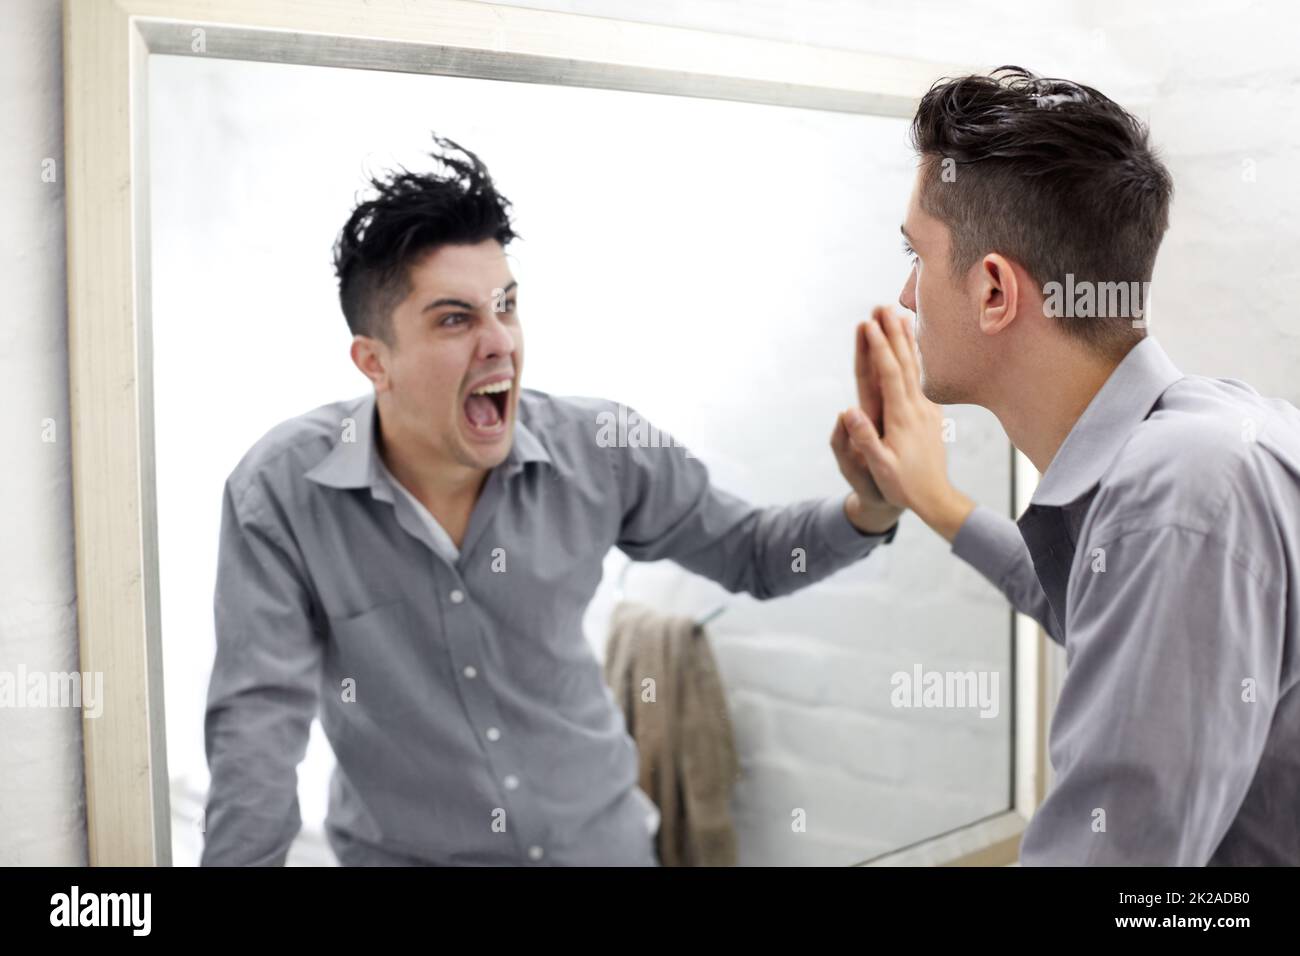 Unterdrückte Emotionen. Junger Mann, der in einem Spiegel eine schreiende Spiegelung seiner selbst ansieht. Stockfoto